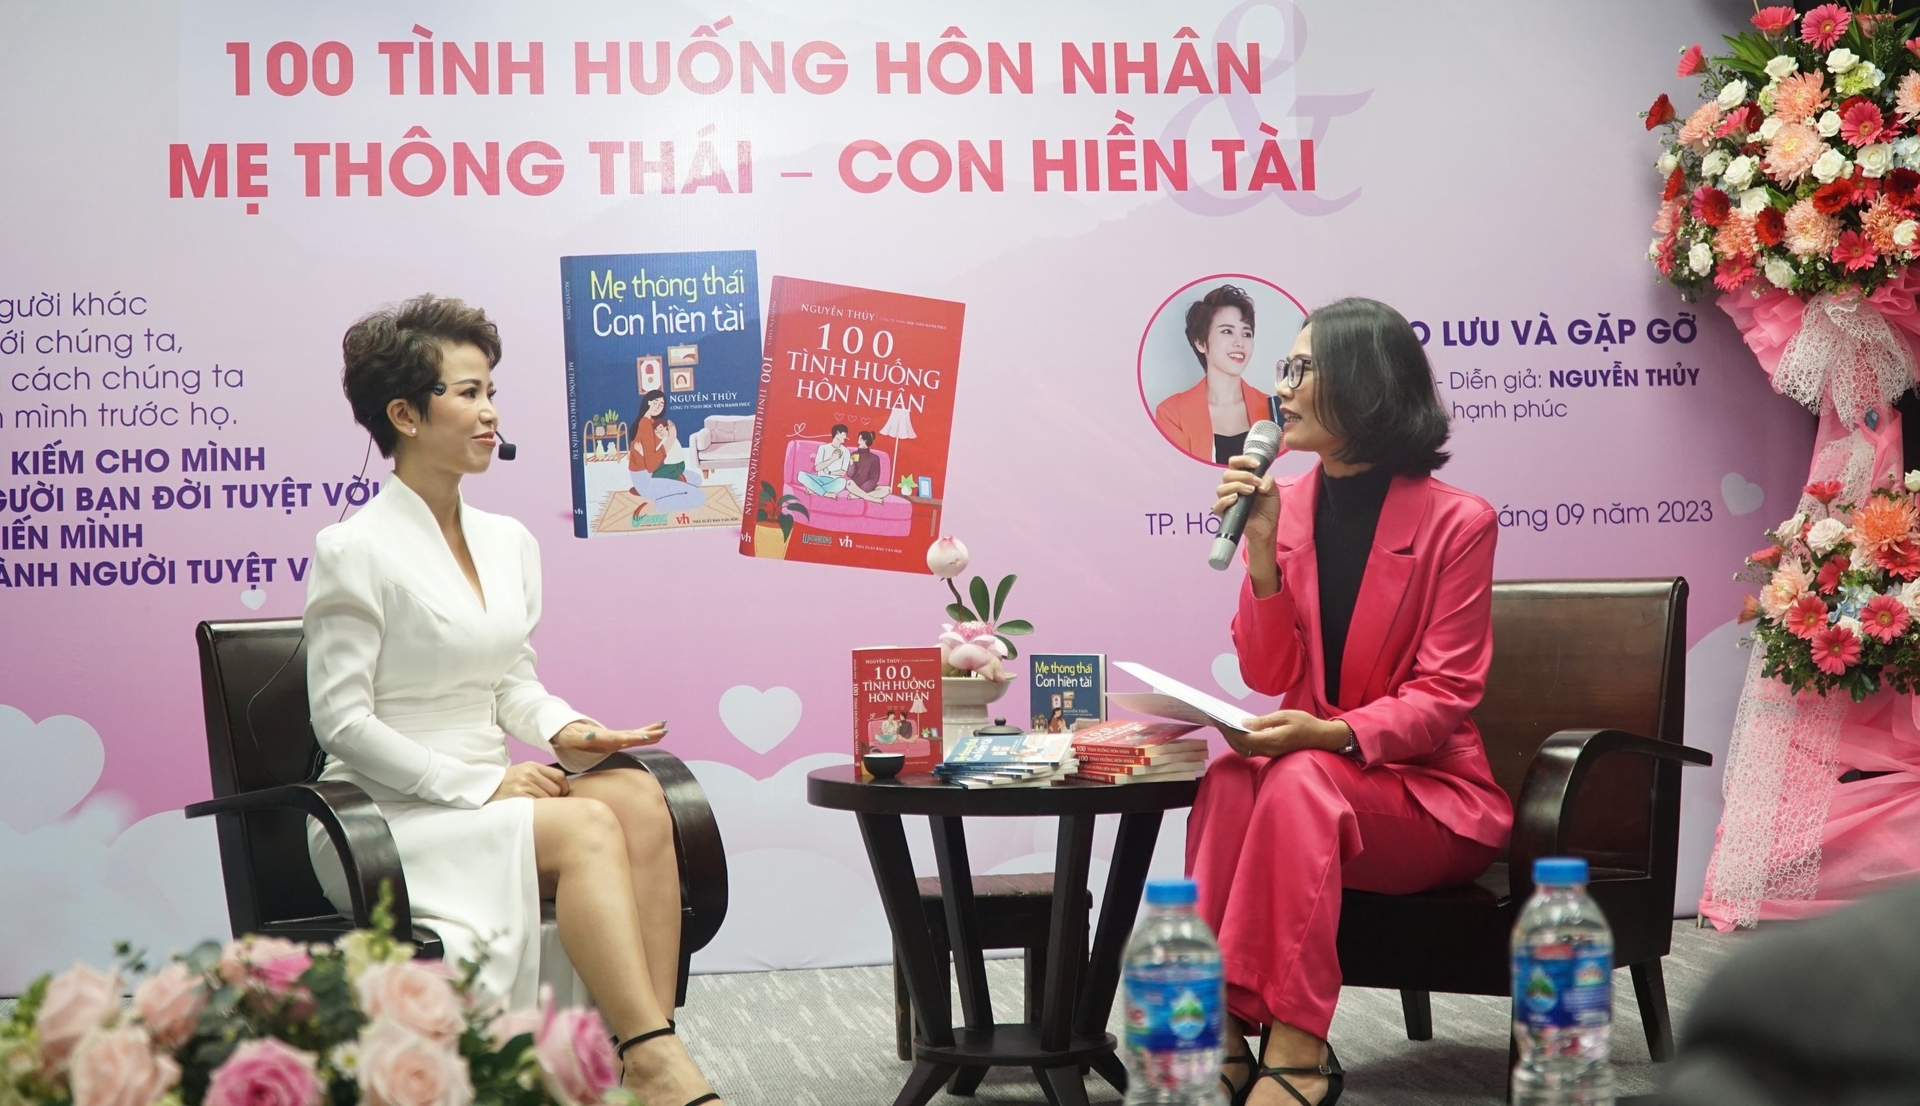 Diễn giả Nguyễn Thủy (trái) tại buổi ra mắt sách.